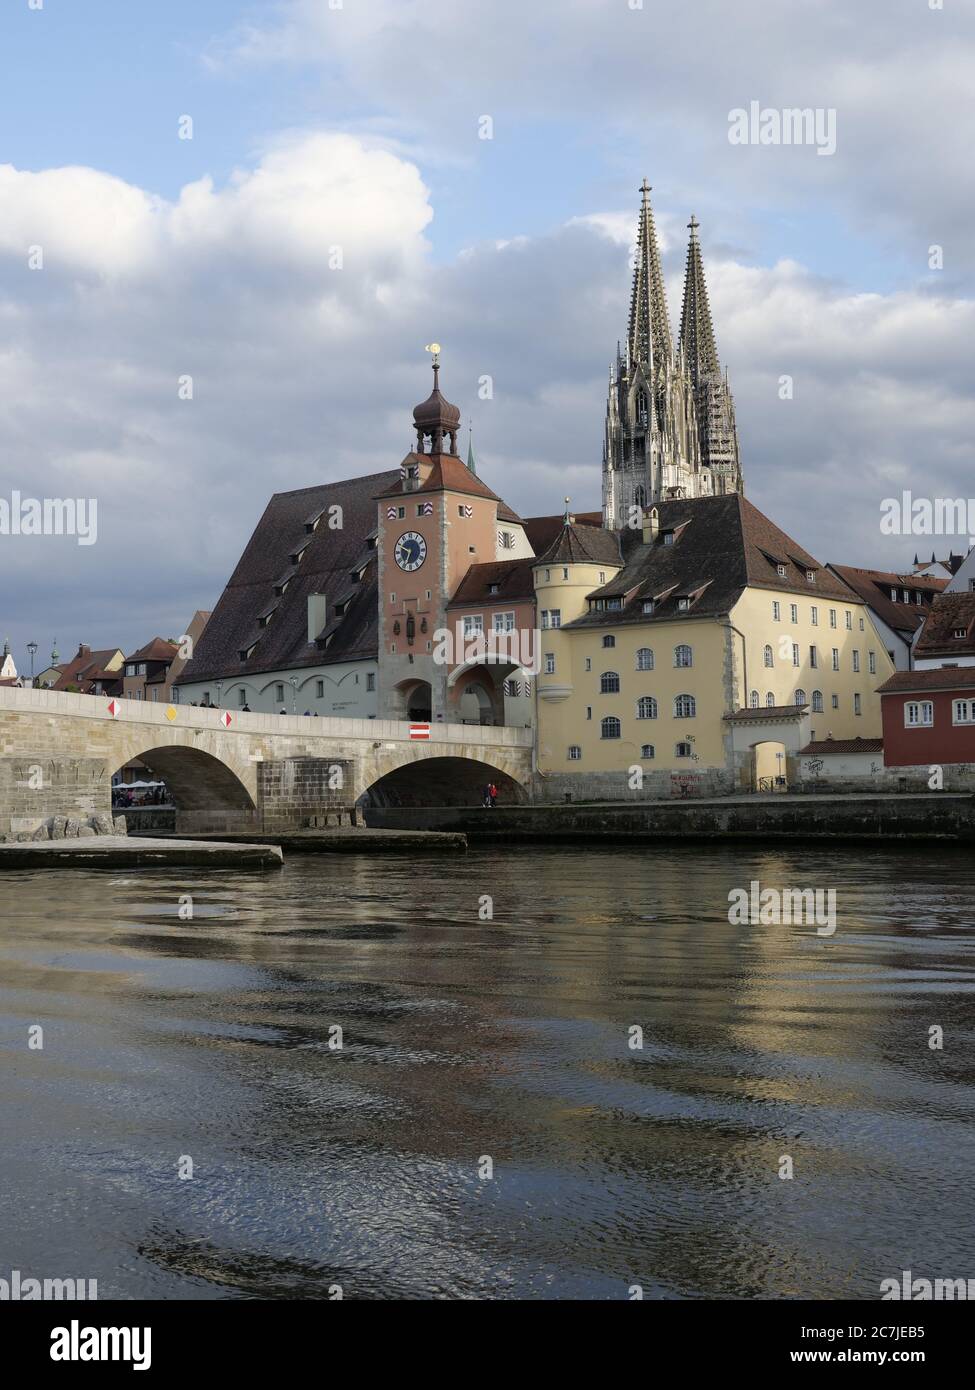 Regensburg, casco antiguo, catedral, torre del puente, puente de piedra, Danubio, Baviera, Alemania Foto de stock